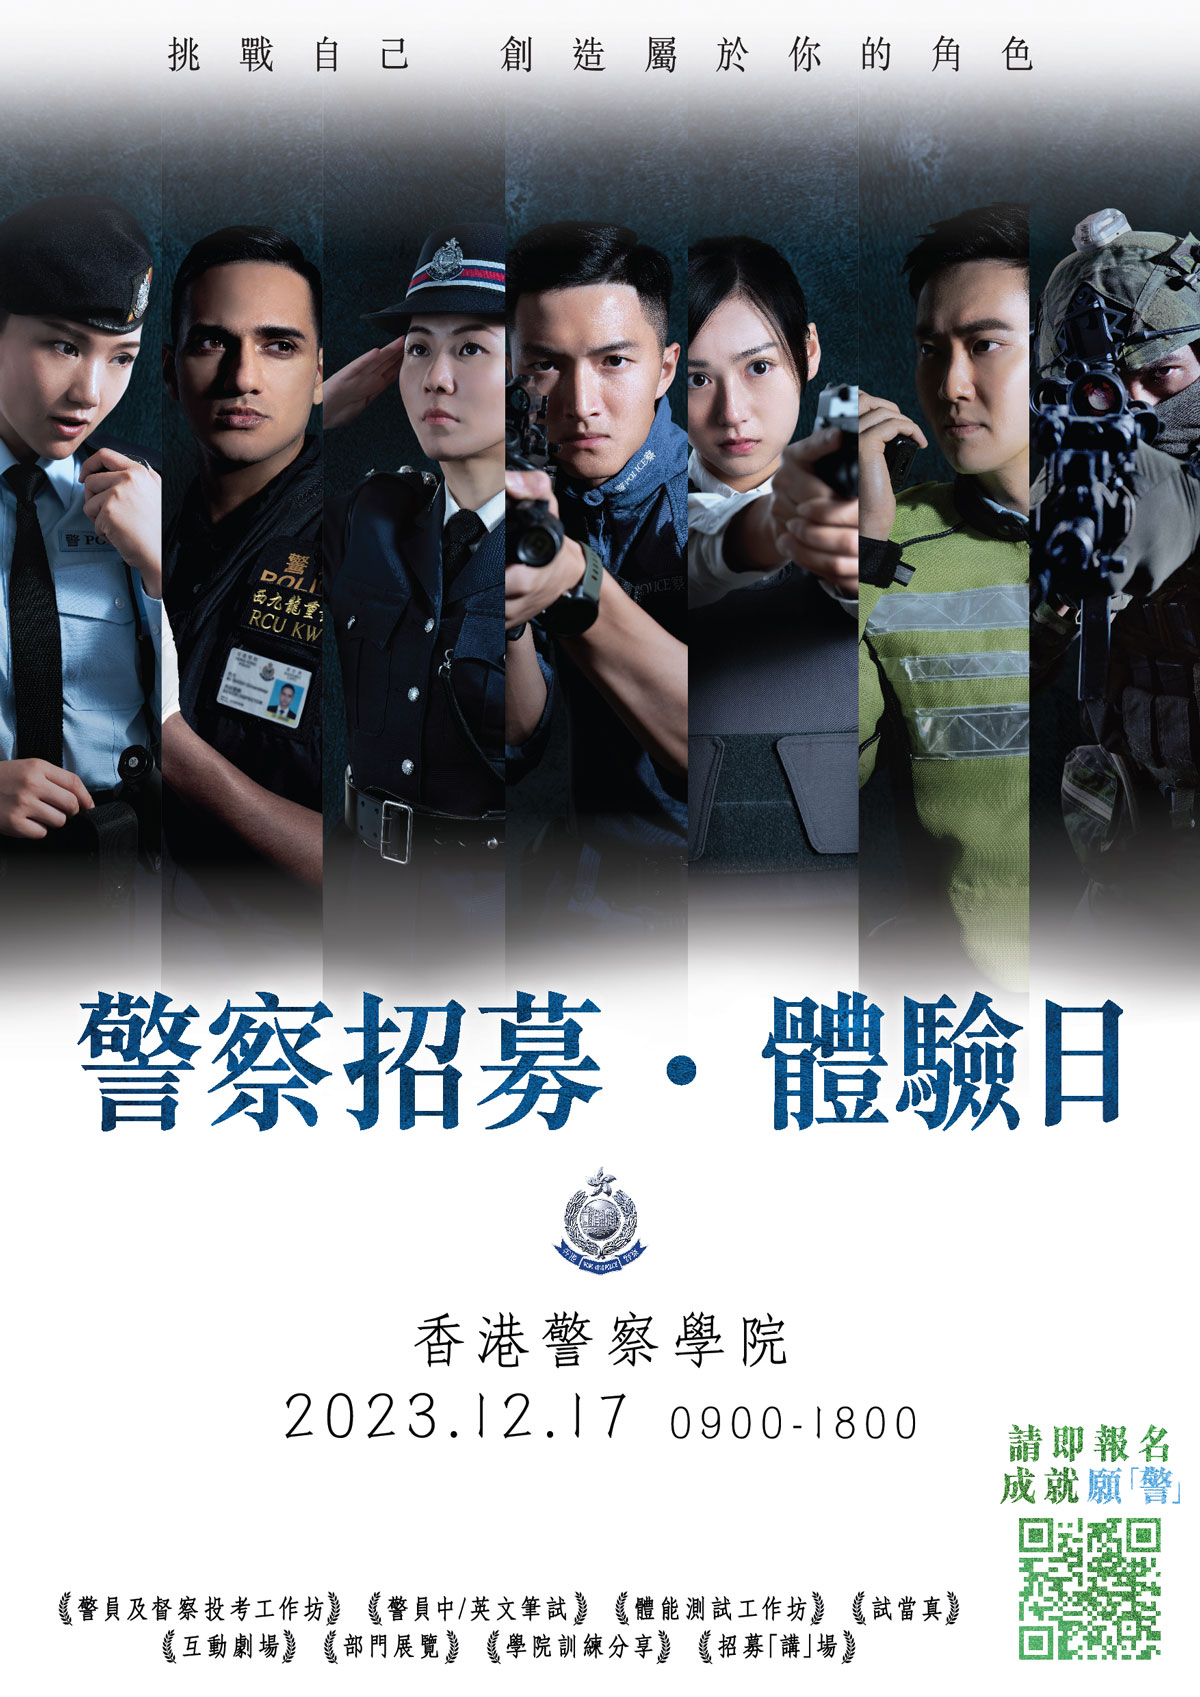 【警察招募・體驗日 - 2023年12月17日(星期日)約定你】